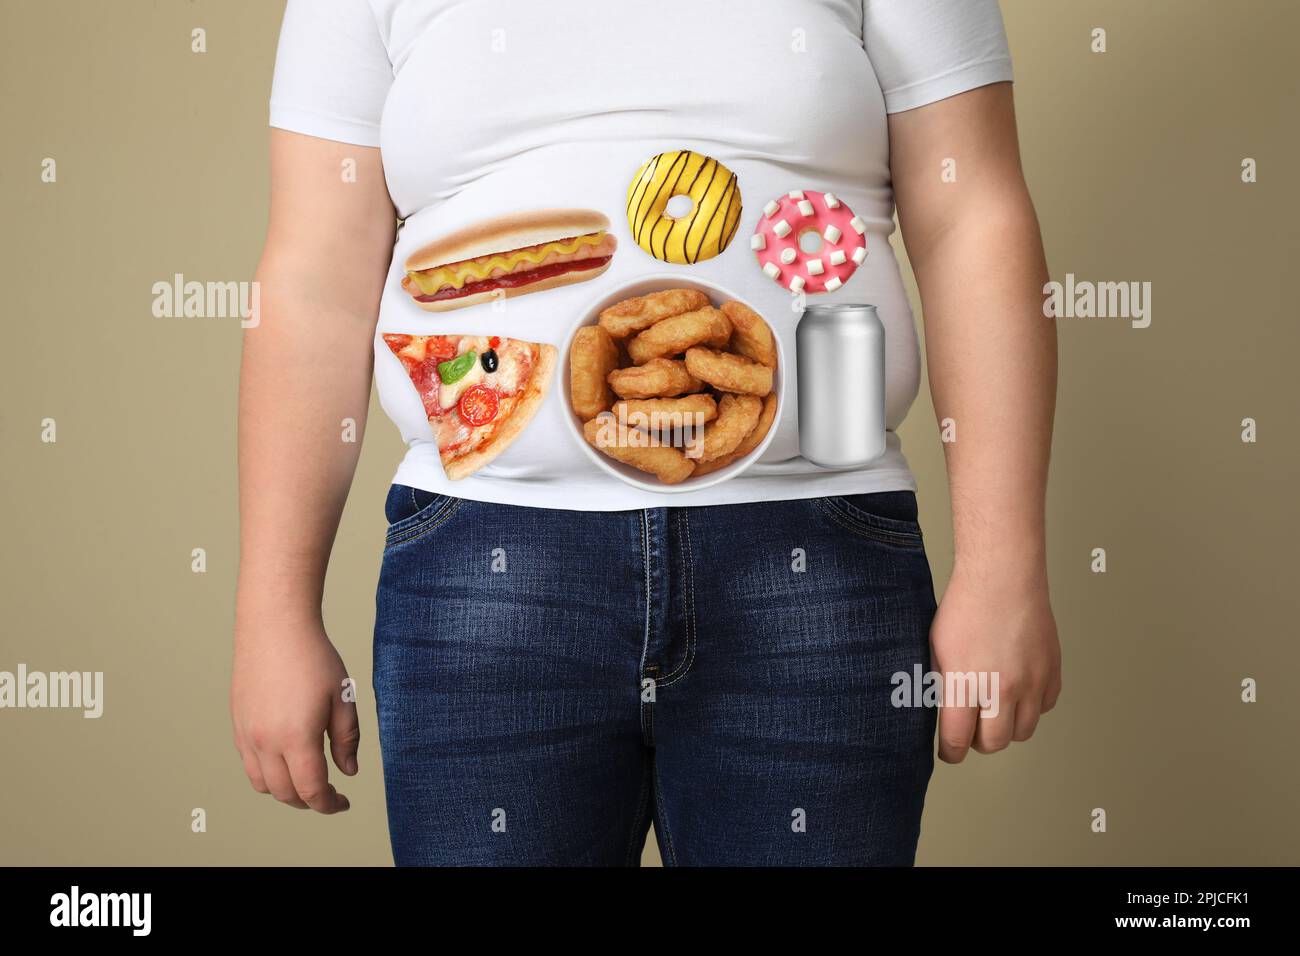 Uomo sovrappeso in t-shirt stretta con immagini di diversi cibi malsani sul suo ventre su sfondo beige, primo piano Foto Stock